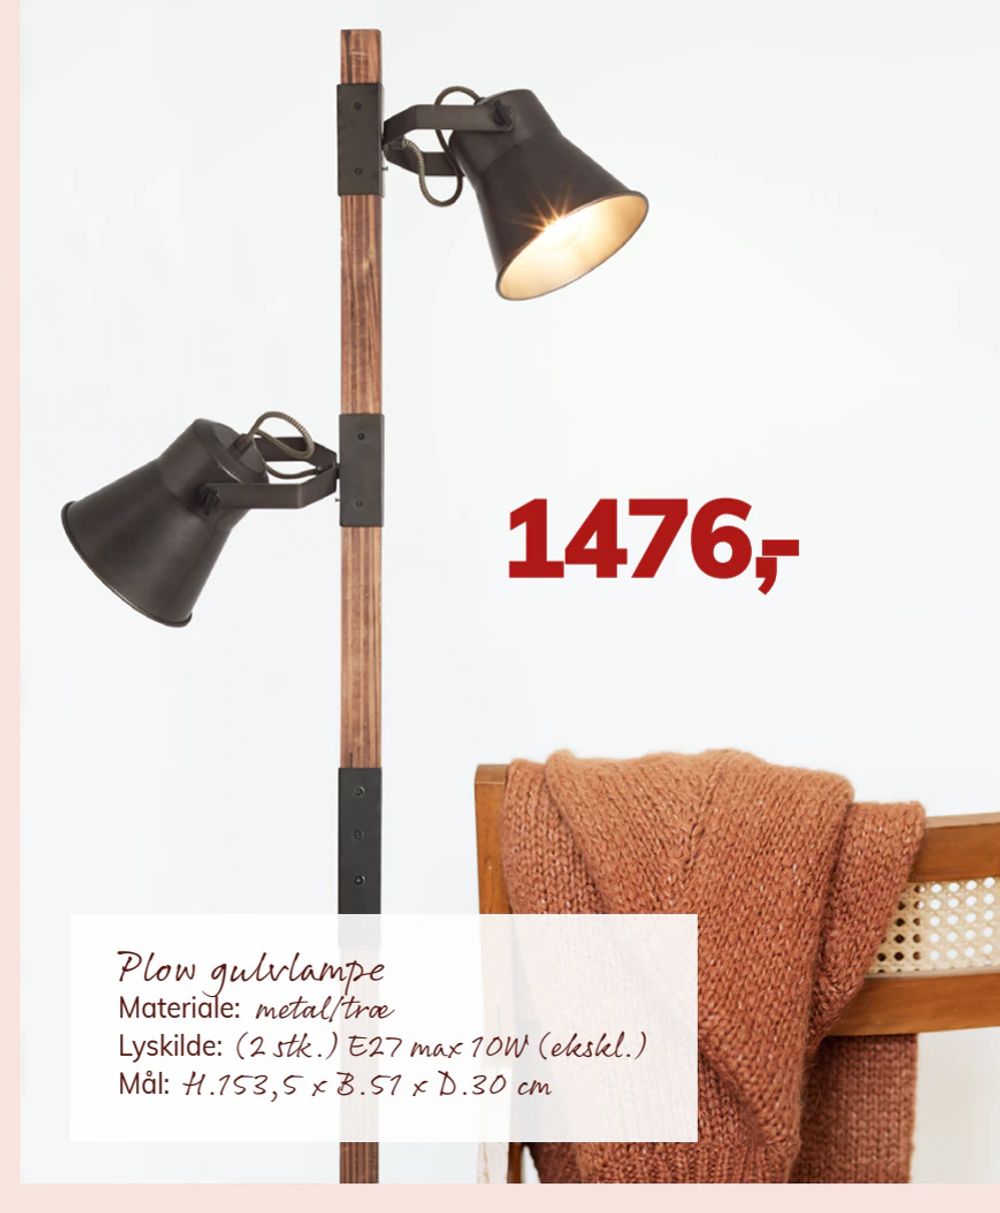 Tilbud på Plow gulvlampe fra Daells Bolighus til 1.476 kr.